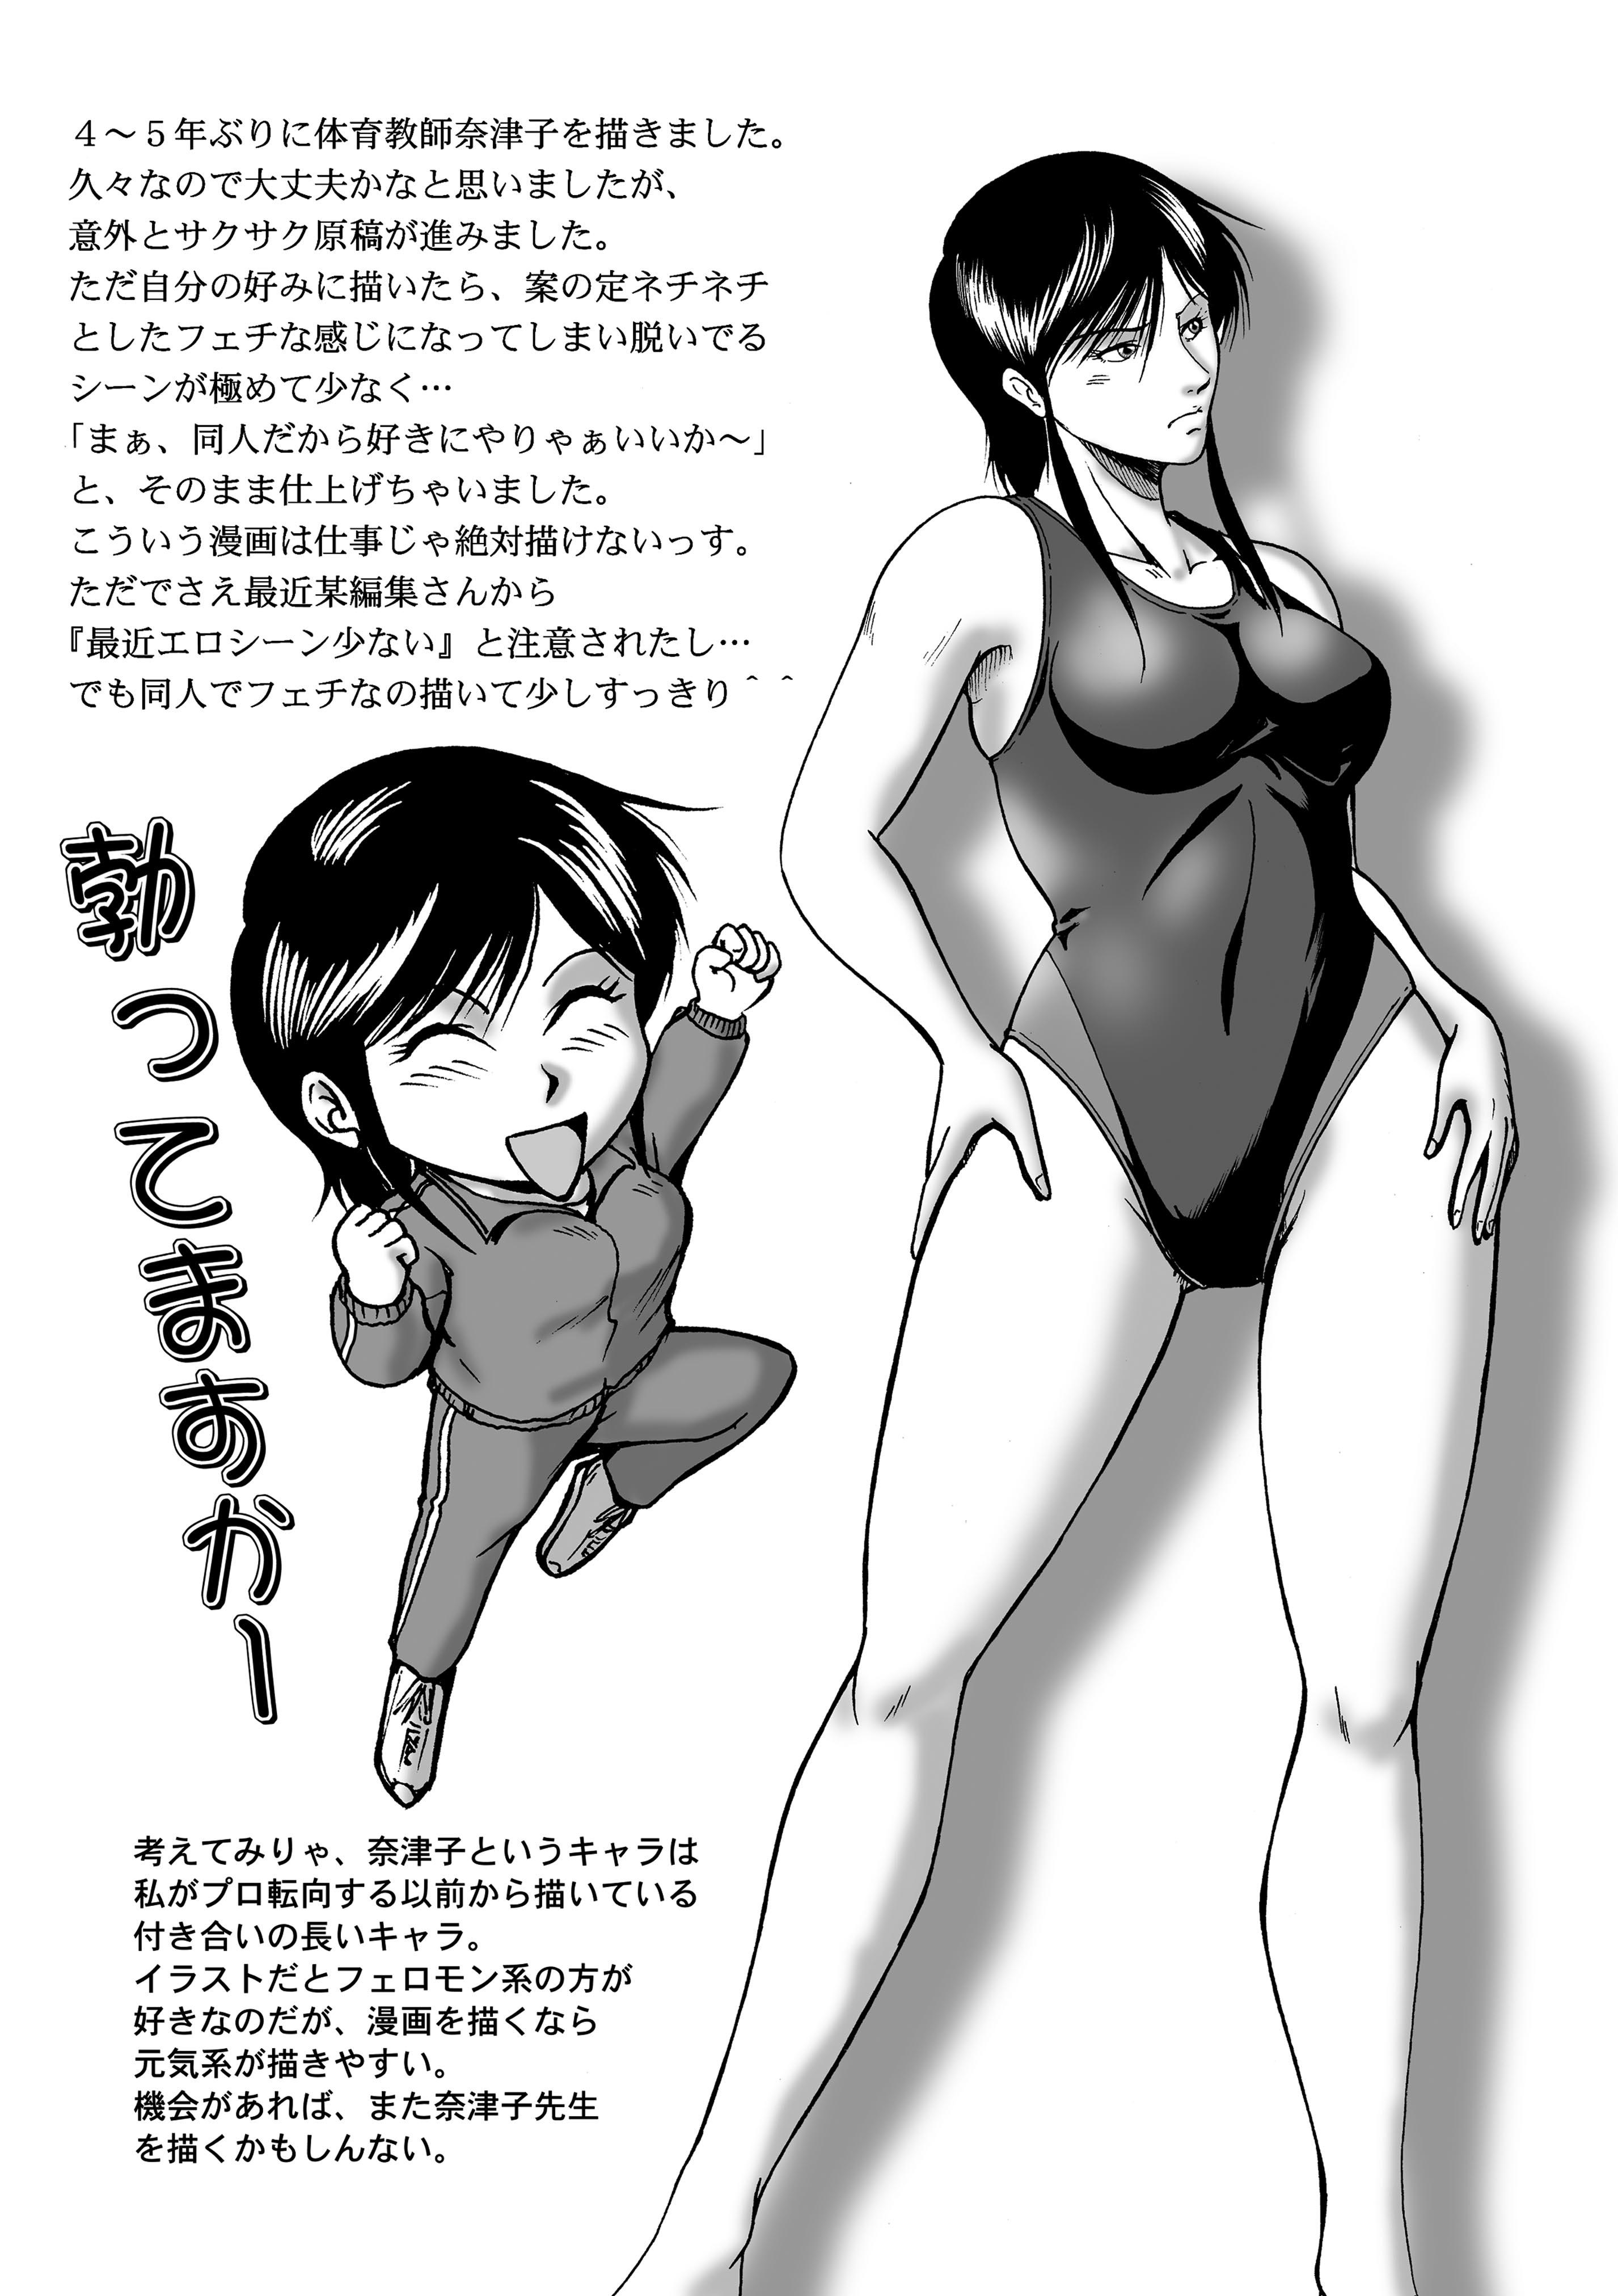 Swim Coach Natsuko - Age 28 20